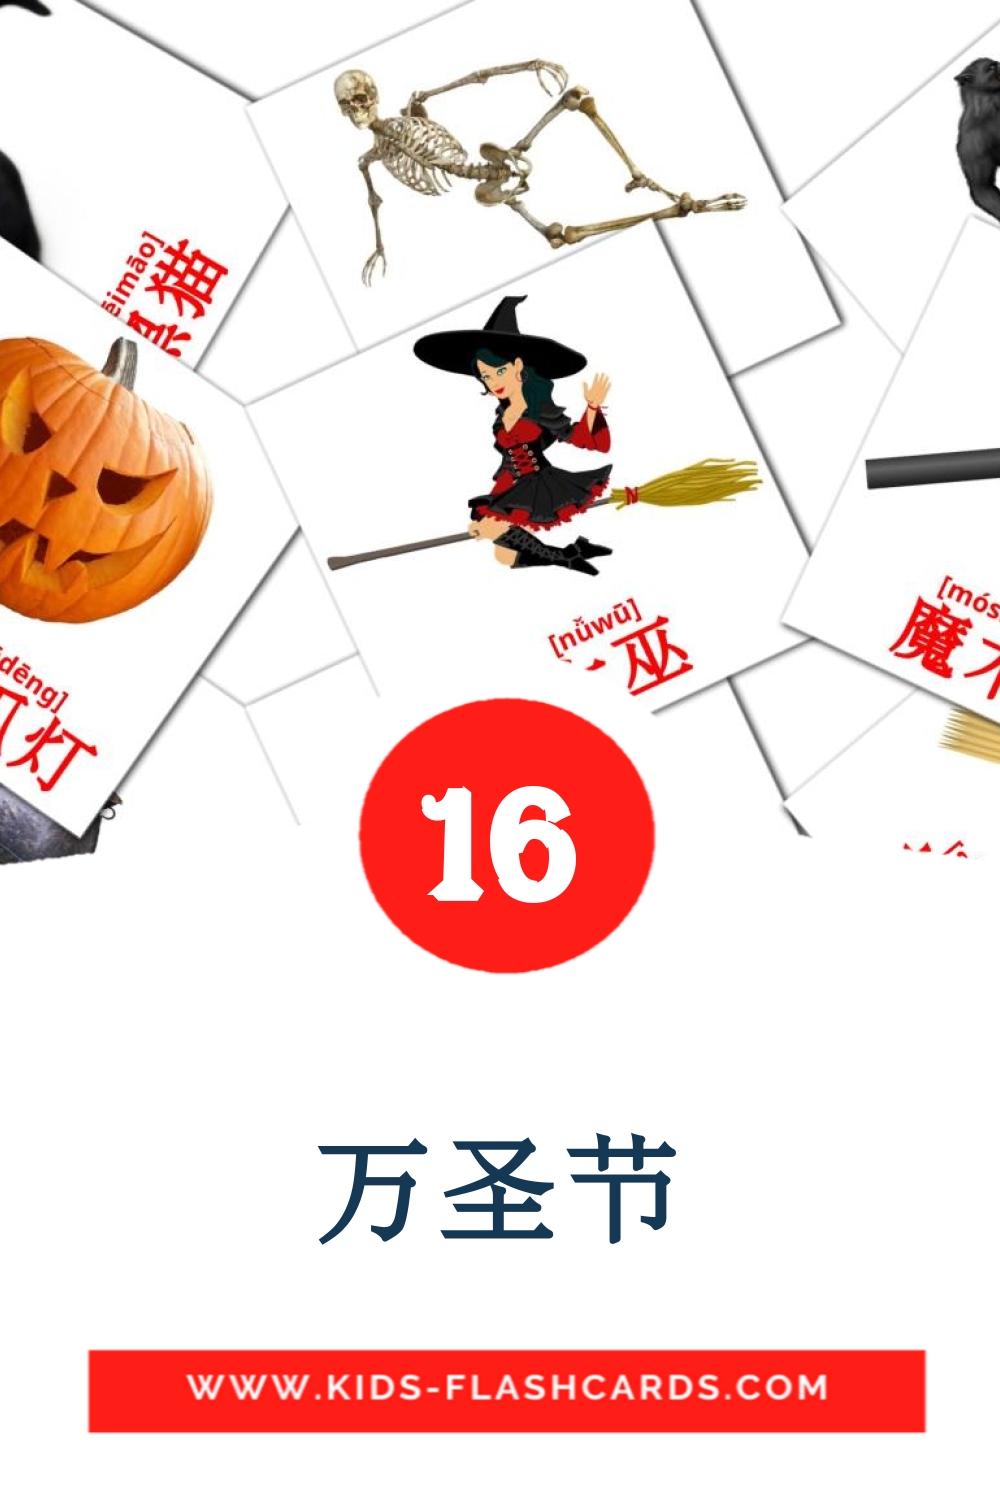 16 万圣节 Picture Cards for Kindergarden in chinese(Simplified)